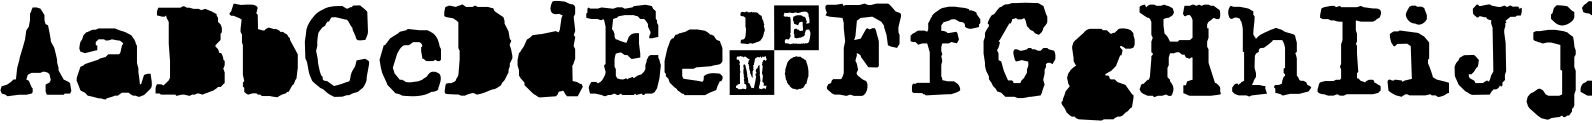 Typewriter 1950 Tech Mono Black DEMO Font OpenType